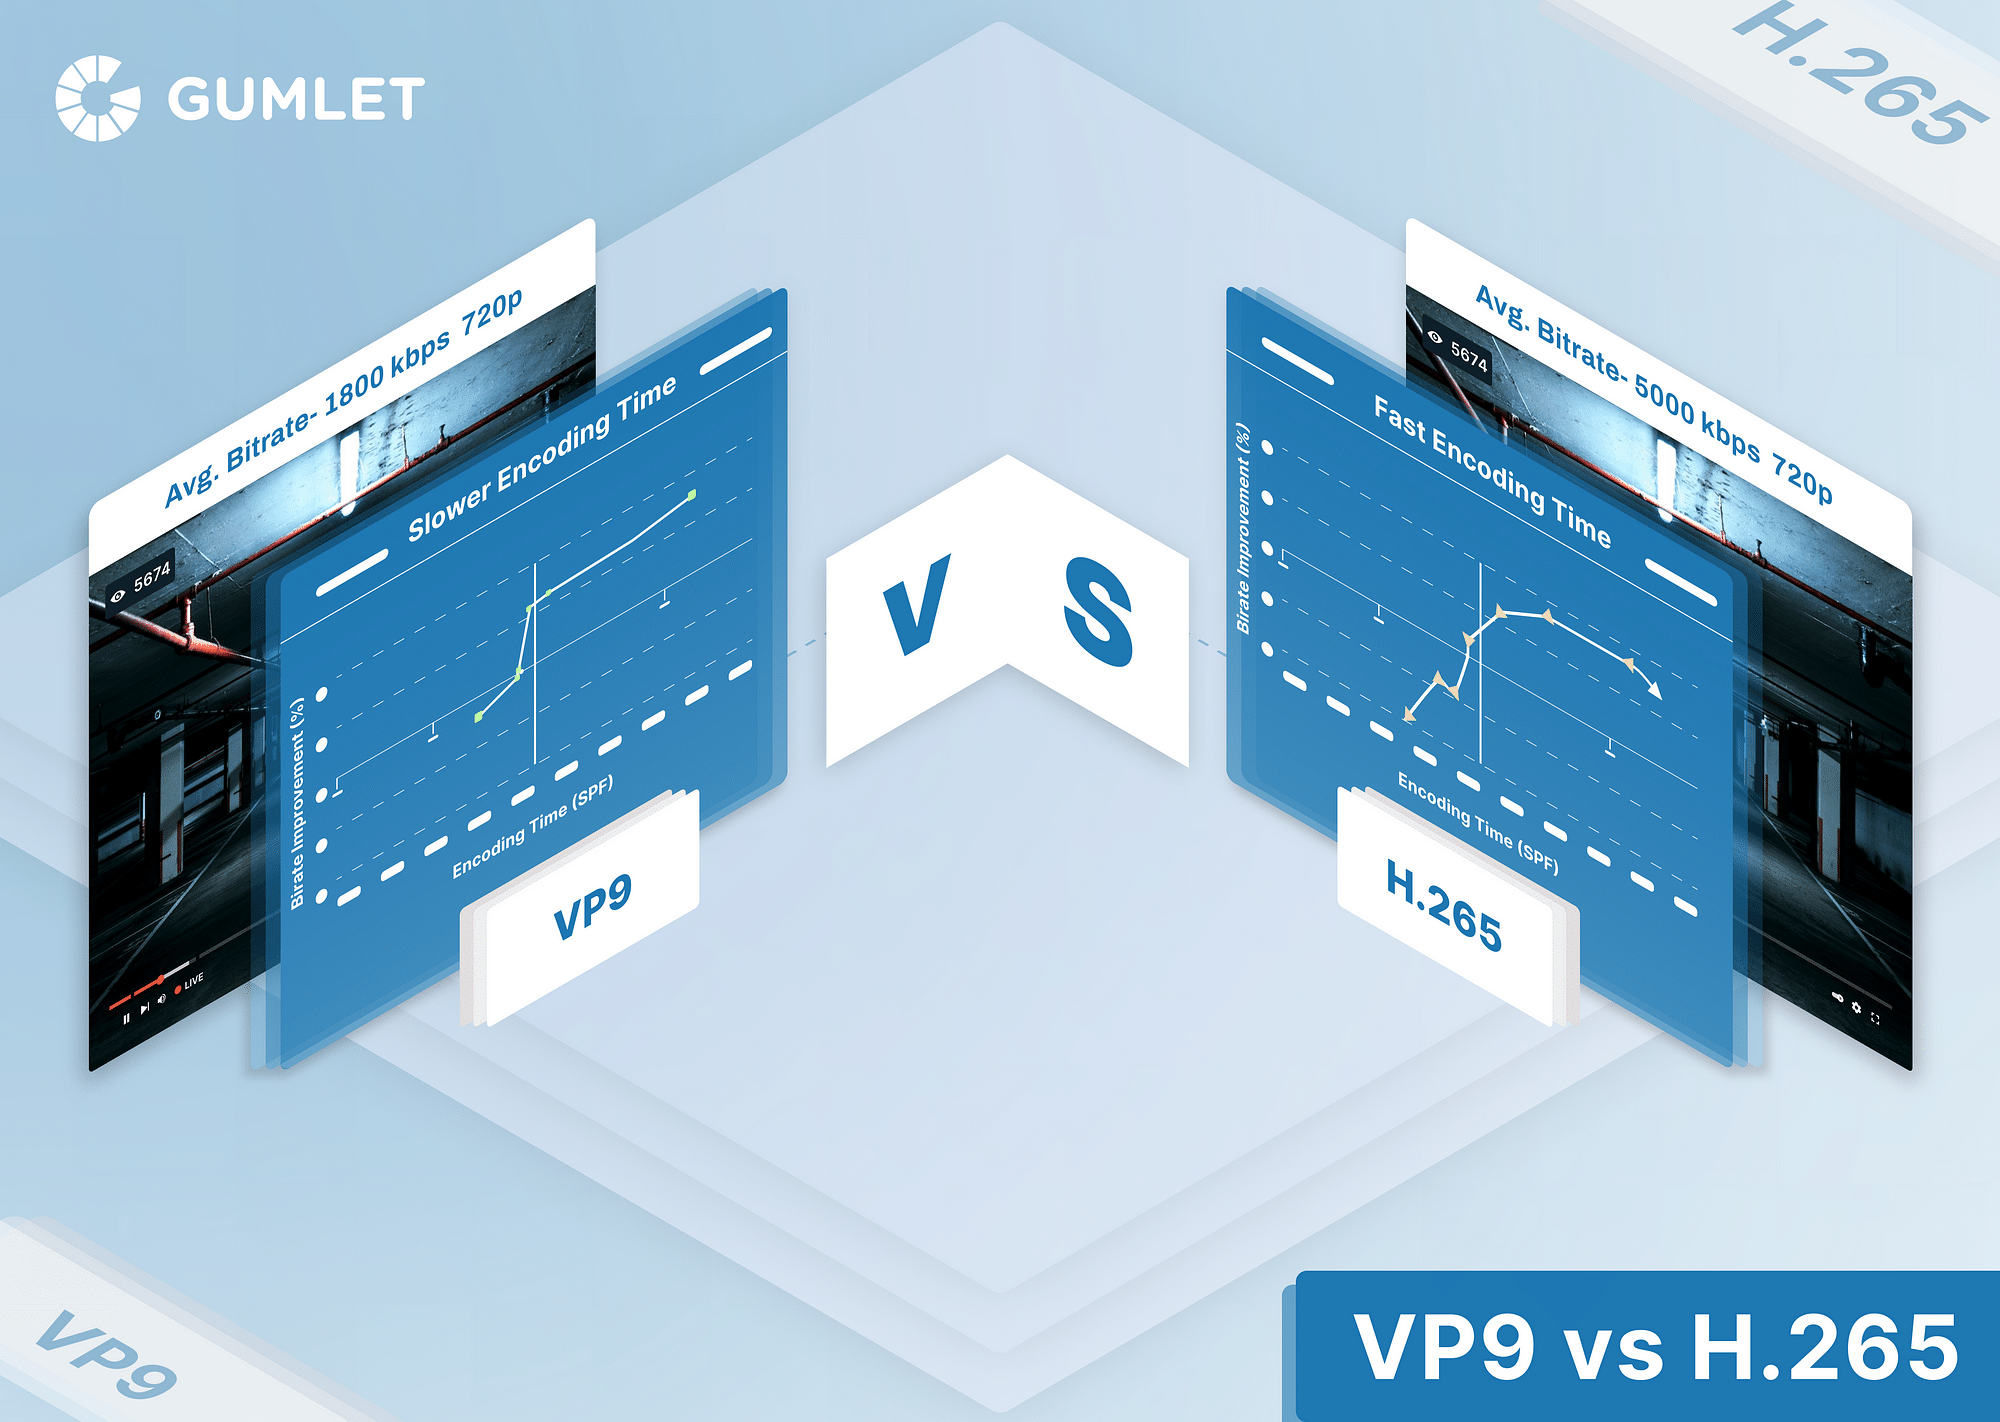 VP9 vs. H.265 - Comparison Between Video Codecs